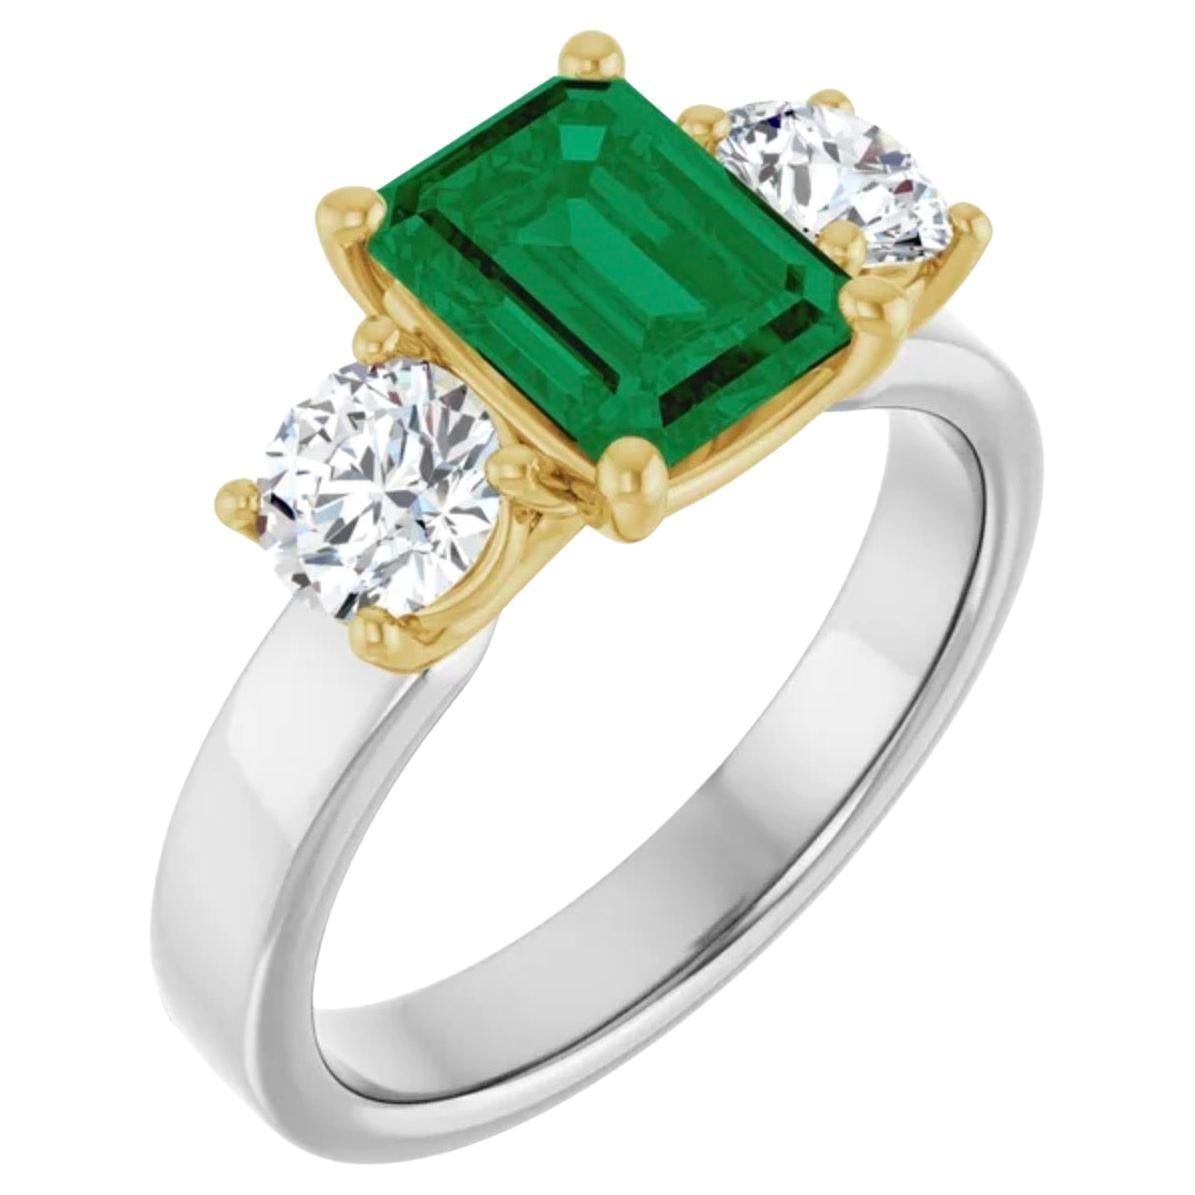 18K weiß/gelb Ring mit einem Zentrum natürlichen AAA kolumbianischen Smaragd Verlobungsring gesetzt. Der Smaragd ist hell beste grüne AAA Klarheit und Farbe 7,6 mm x 5,7 mm ca. 1,10 Karat. 
Diamanten jeweils 4,8 mm im Vollschliff,  Farbe G-H,